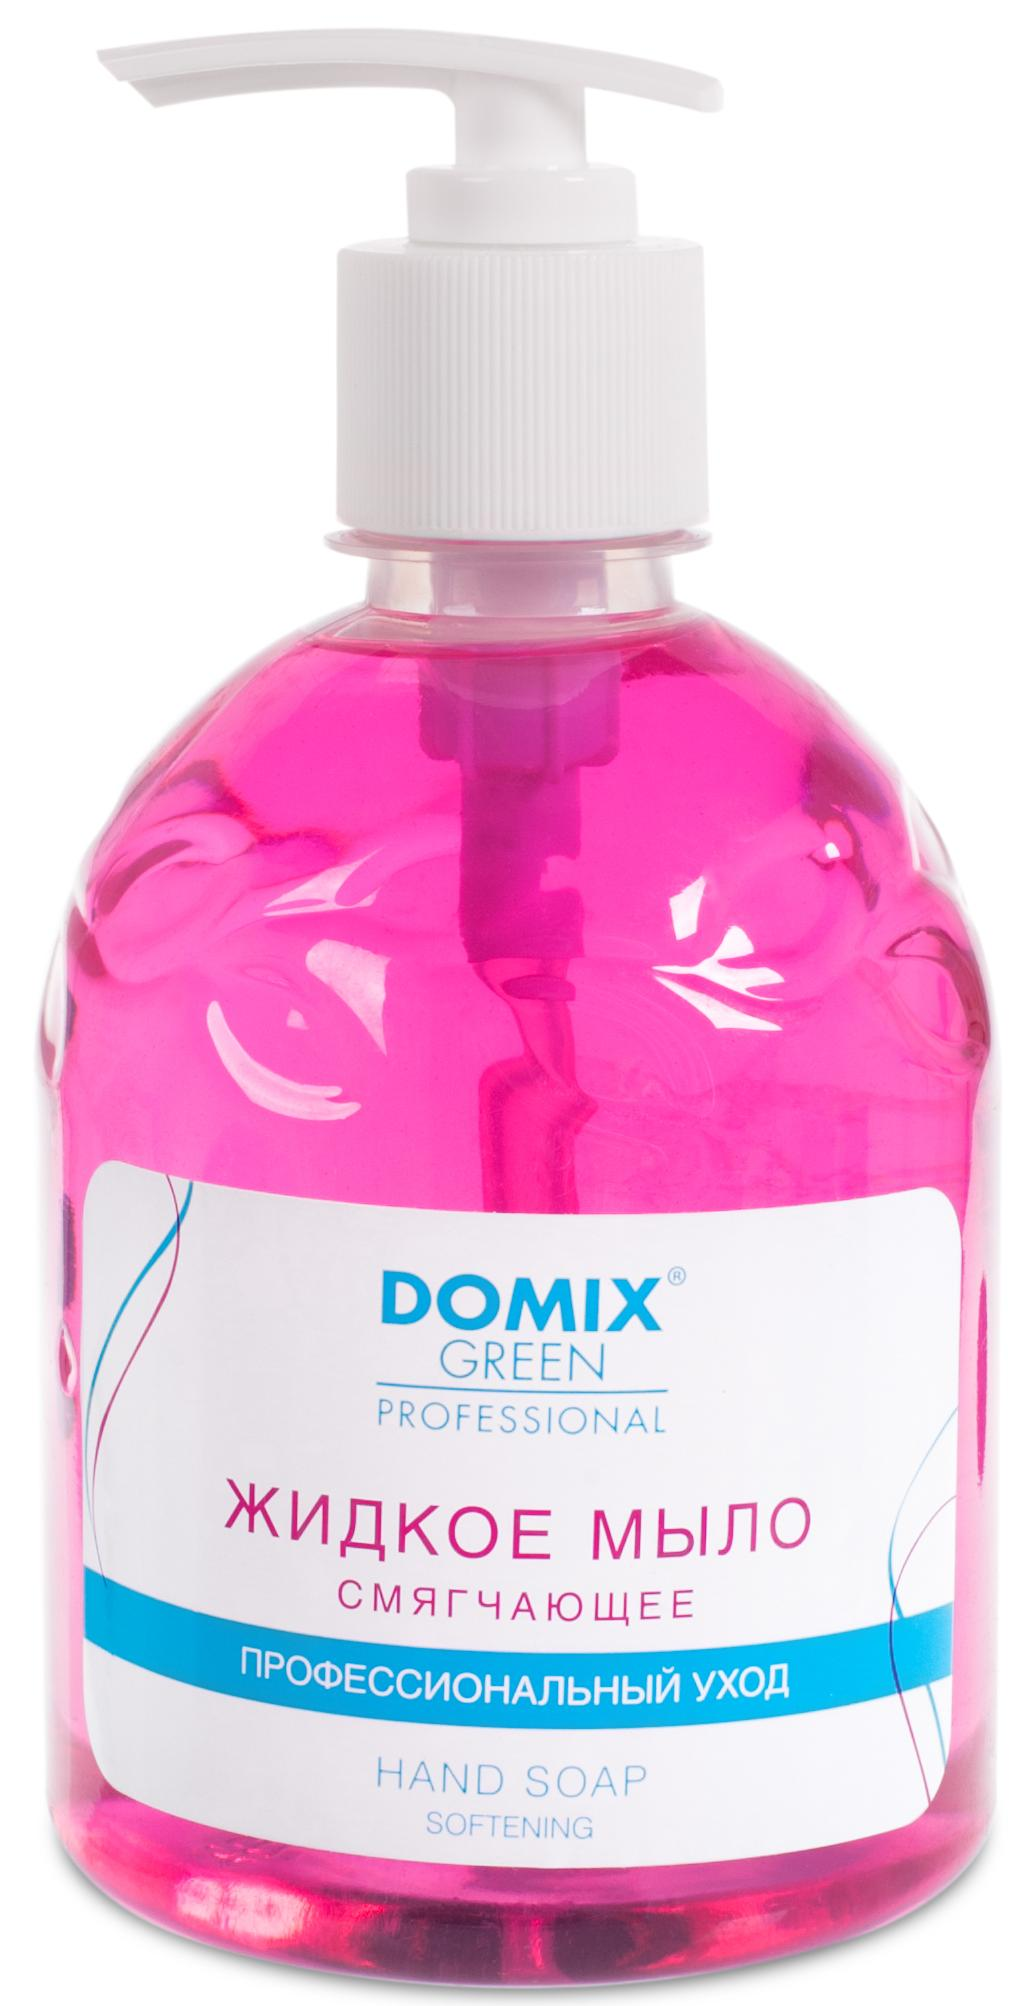 DOMIX Мыло жидкое смягчающее для профессионального ухода / DGP 500 мл domix молочко для ухода за кожей и ногтями perfumer 18 0